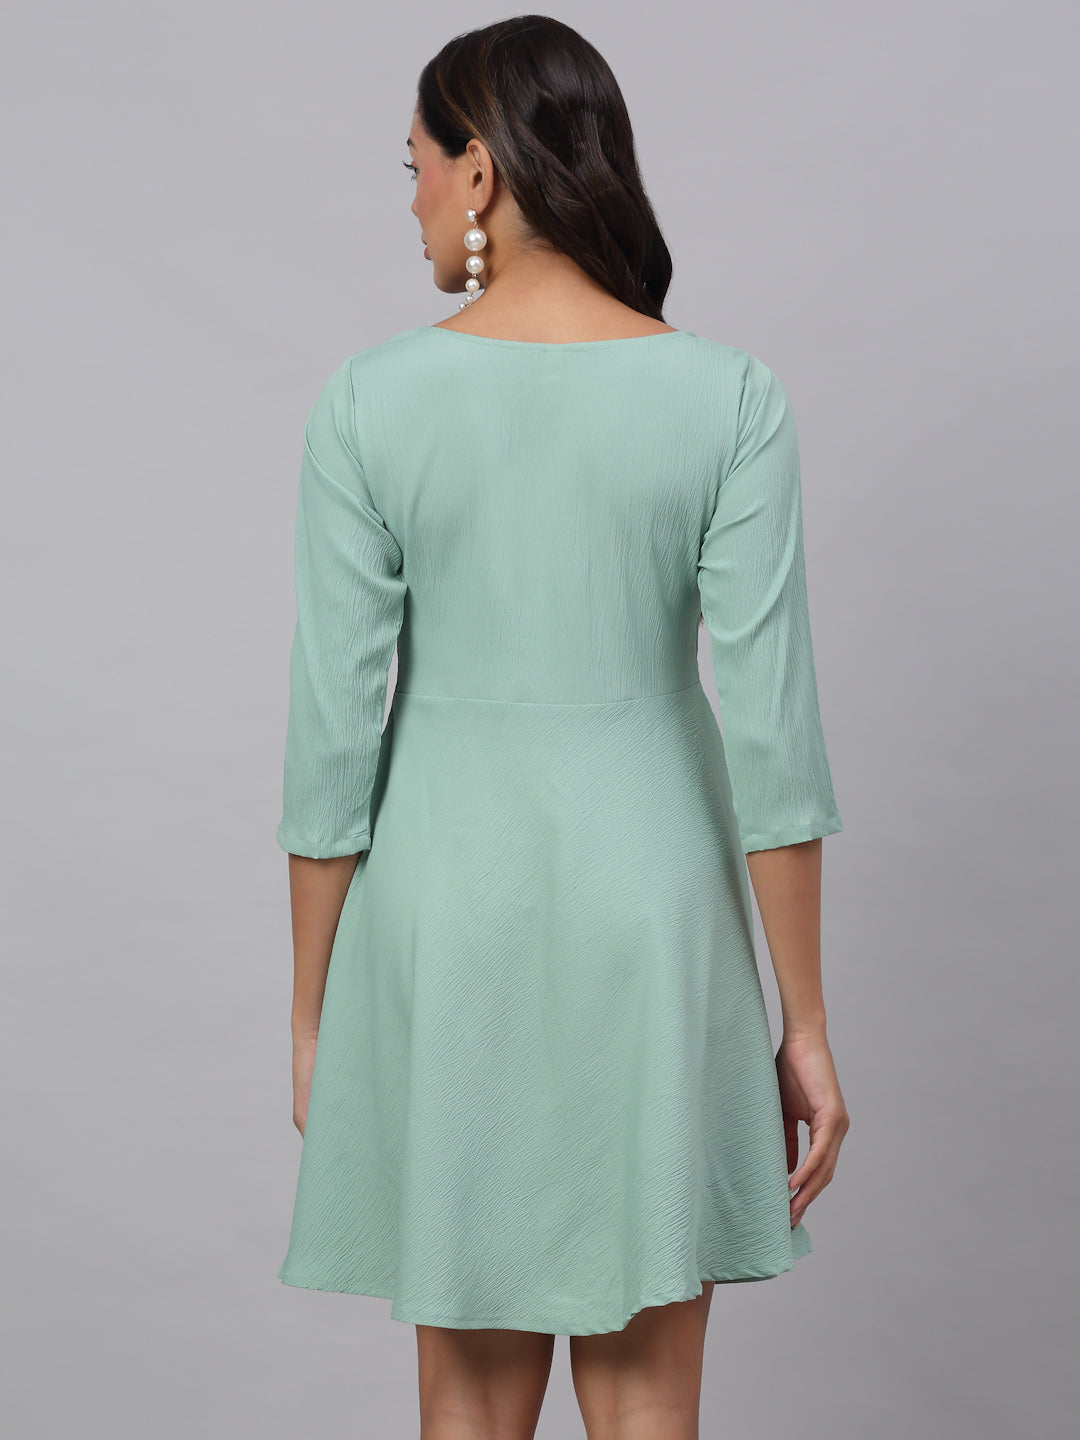 Women's Green A-Line Dress